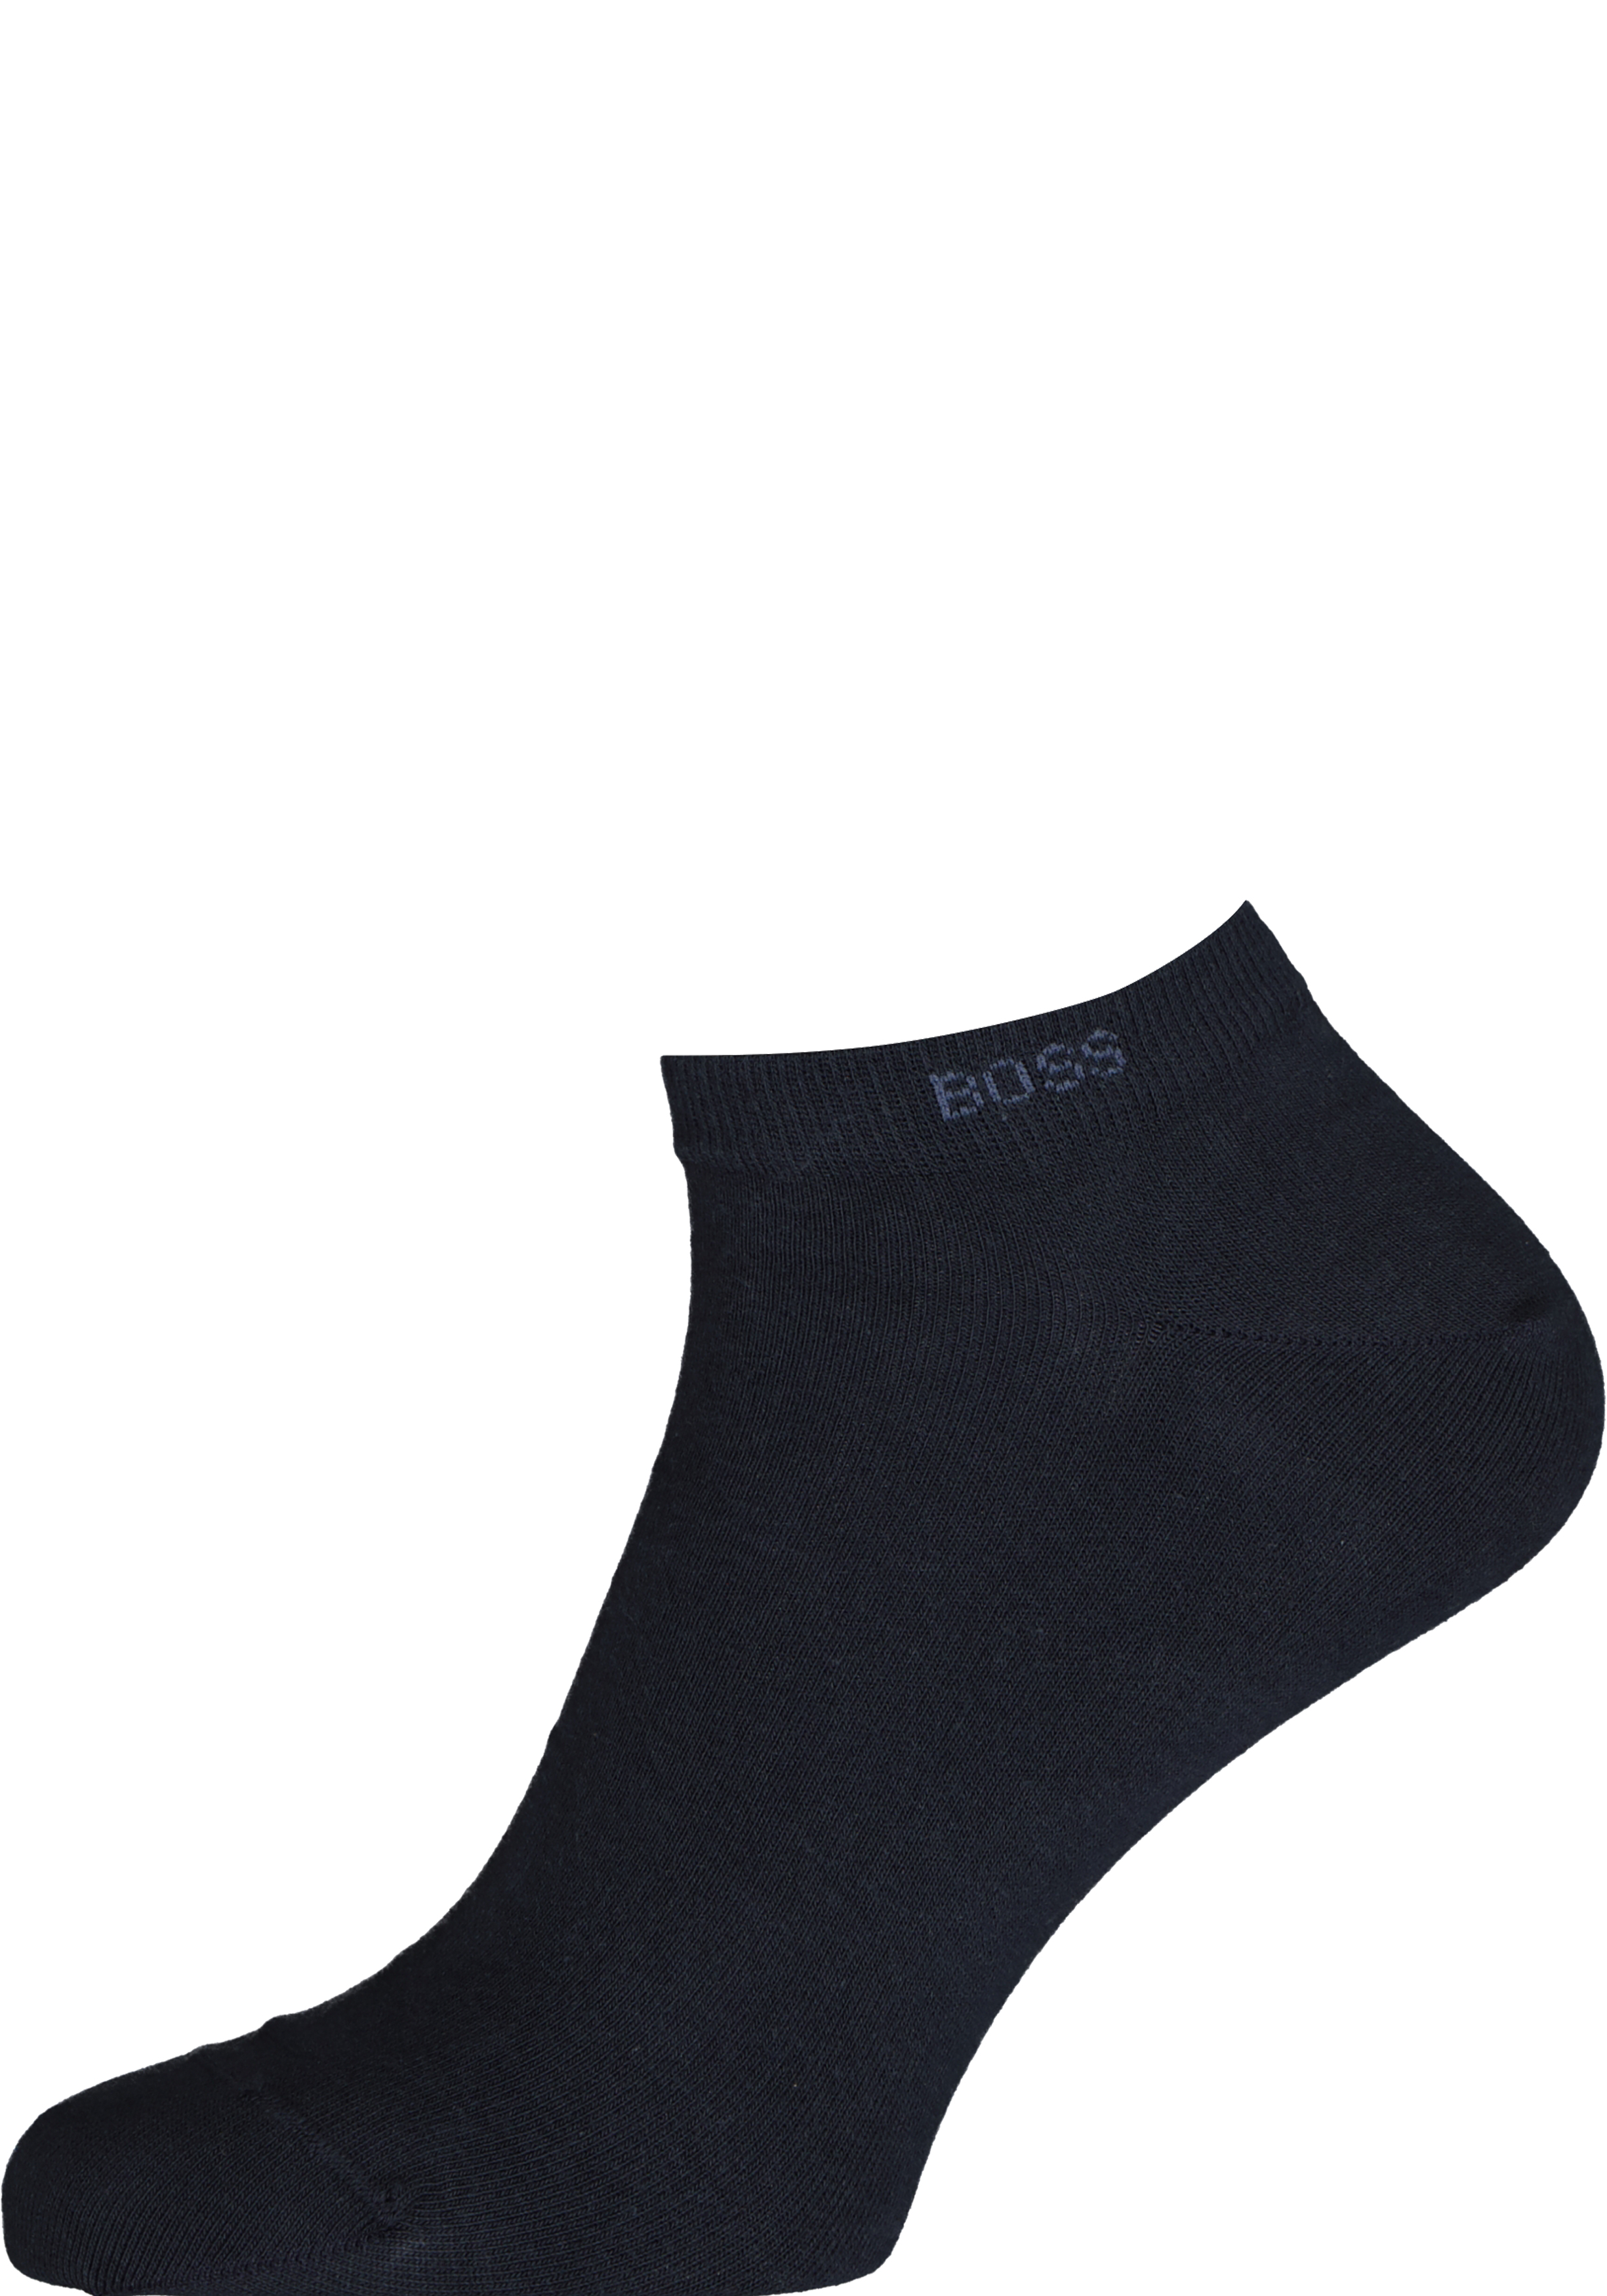 BOSS enkelsokken (2-pack), sokken donkerblauw - 20% Paaskorting op (bijna) alles